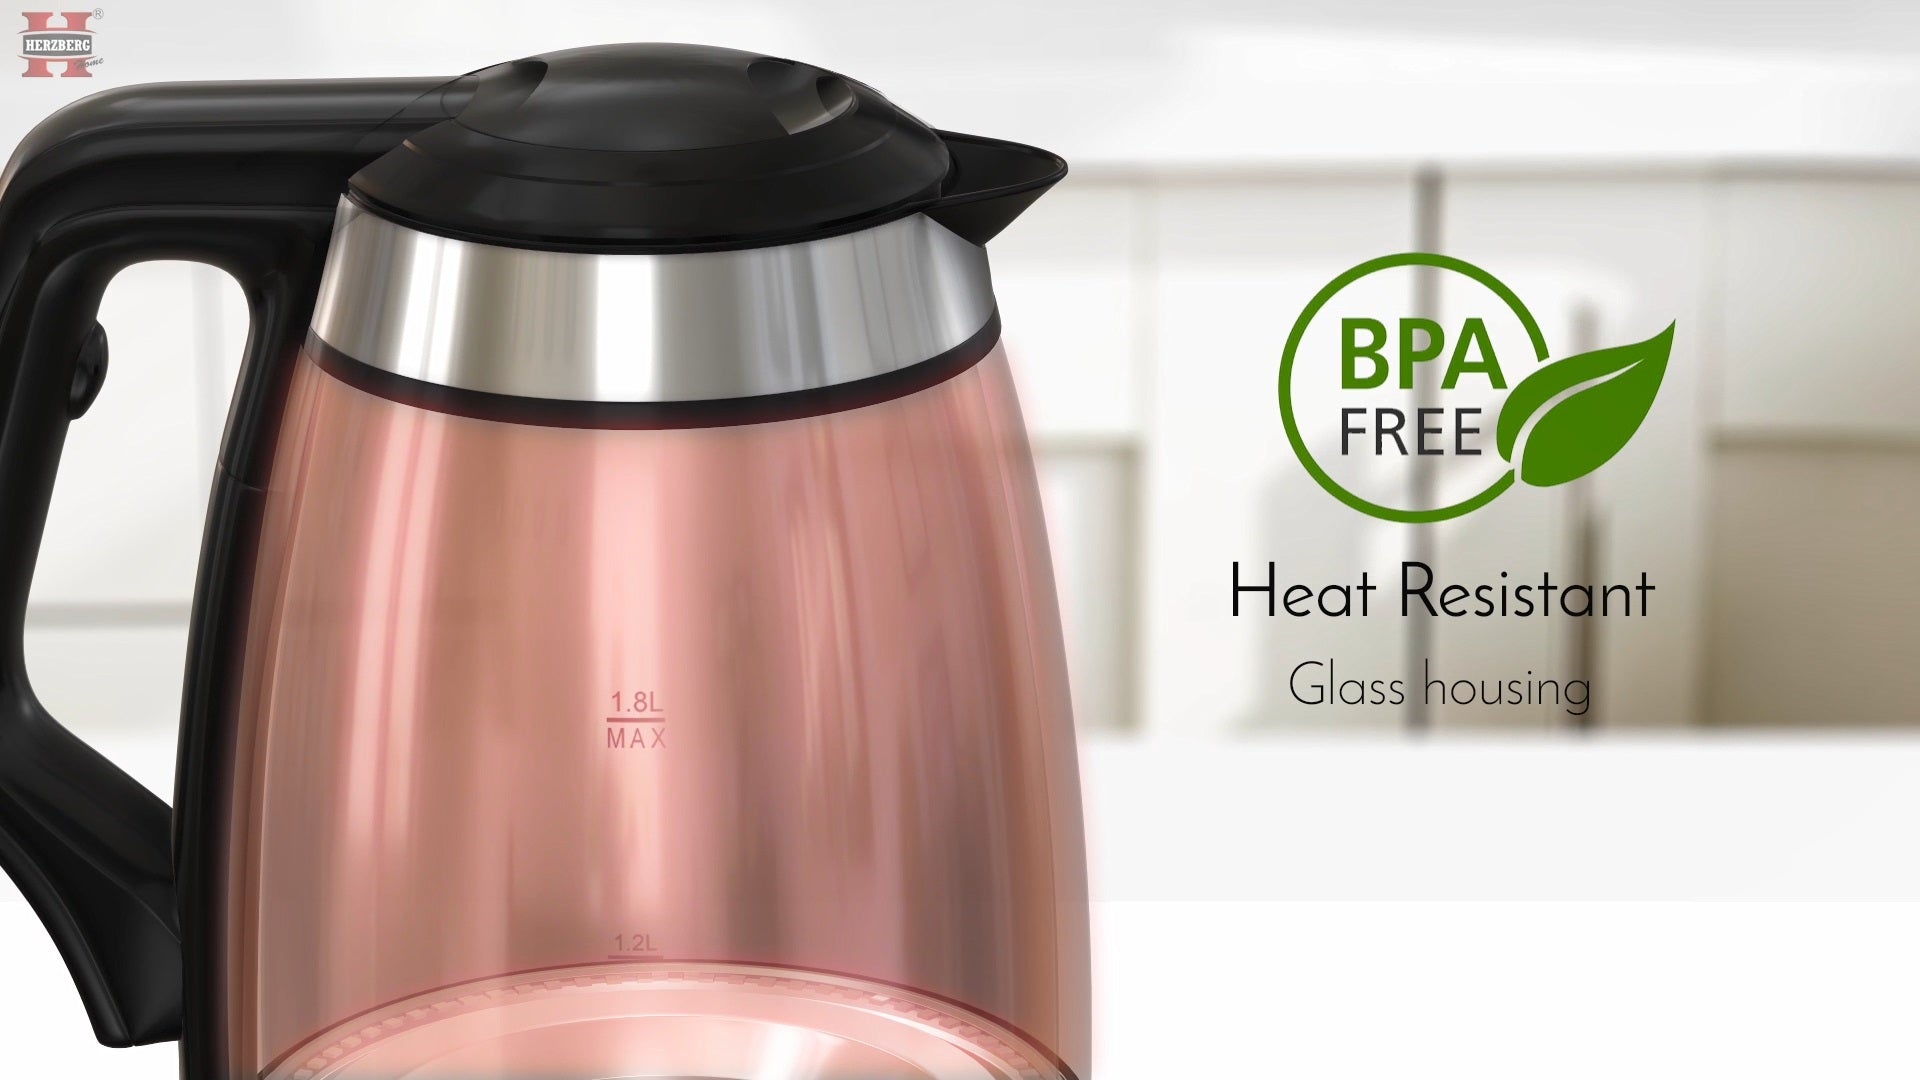 Herzberg 1.8L Elektrische Glazen Waterkoker met LED-Lichtindicator - BPA vrij - Bivakshop